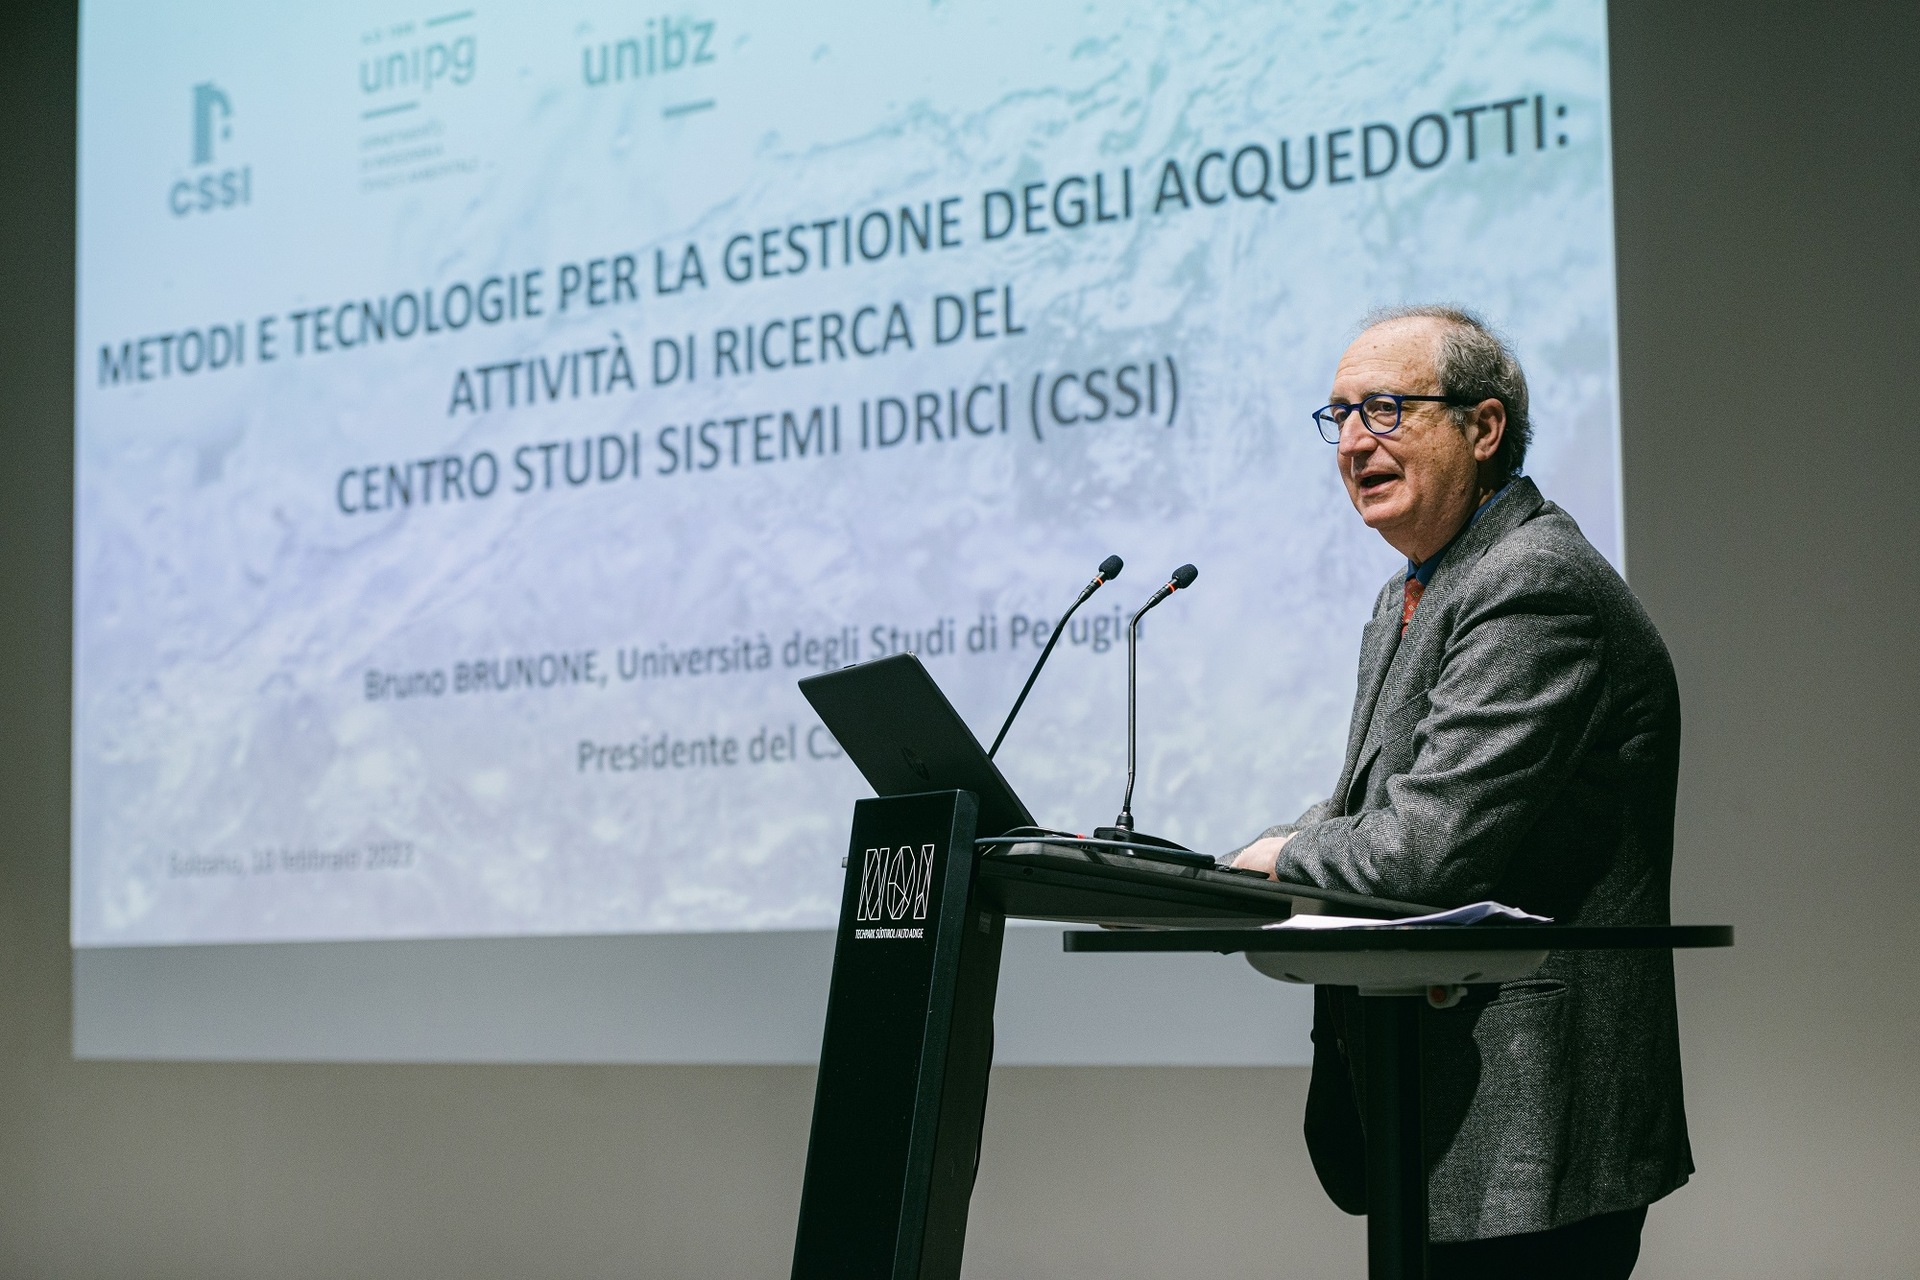 Acqua: Bruno Brunone è Presidente del CSSI (Centro Studi Sistemi Idrici) in Italia